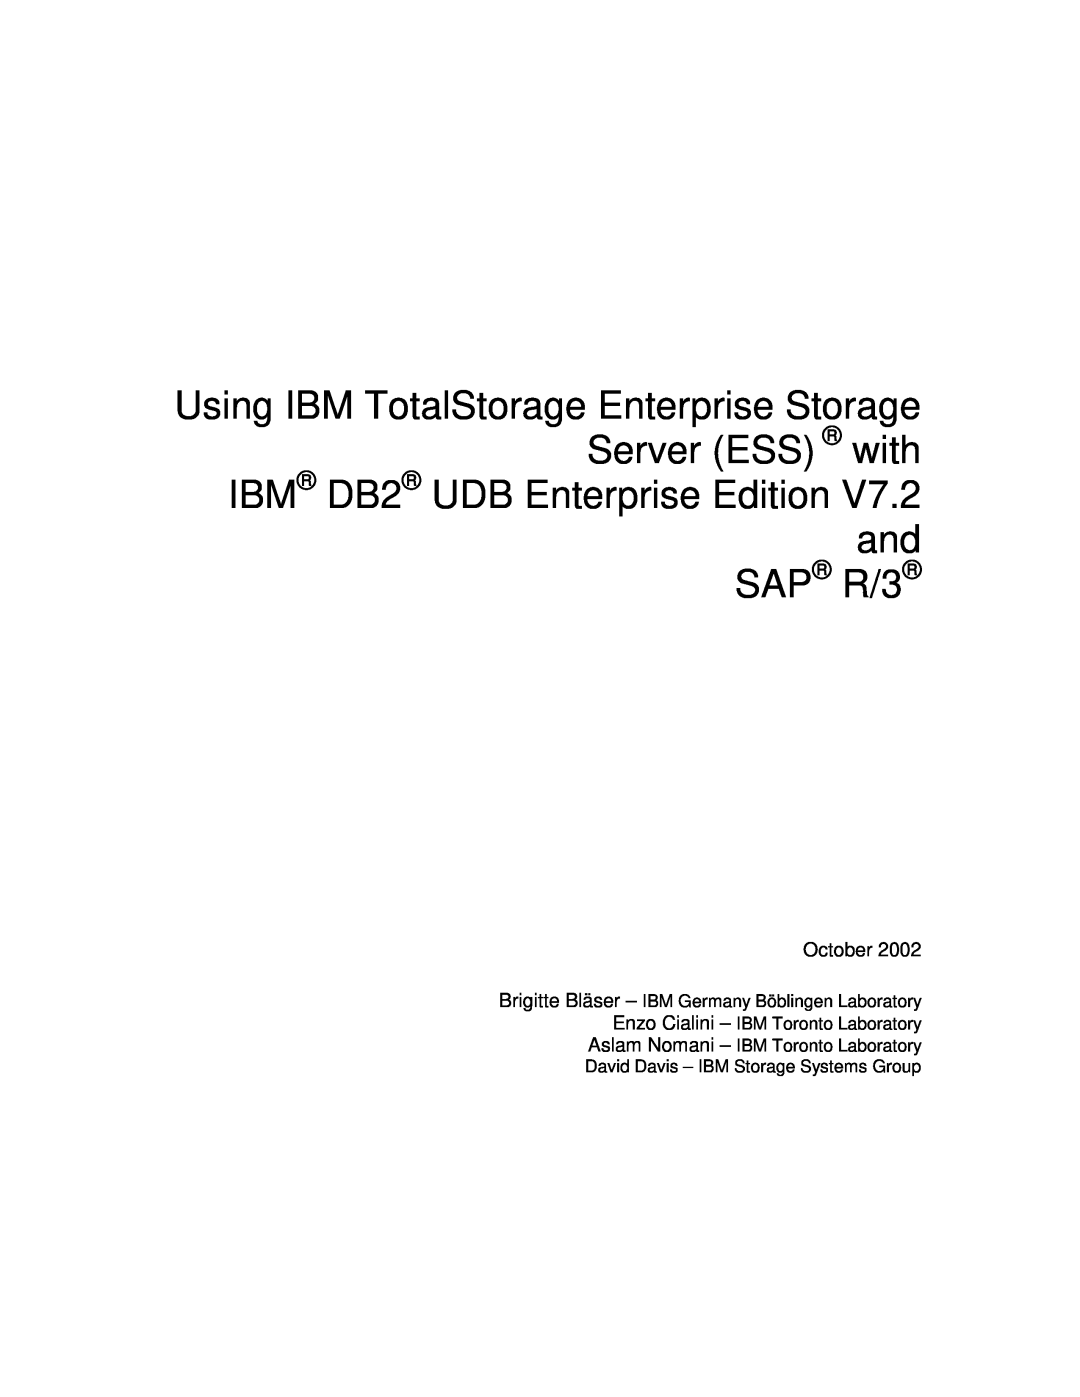 IBM V7.2 manual October, Brigitte Bläser - IBM Germany Böblingen Laboratory, Enzo Cialini - IBM Toronto Laboratory 